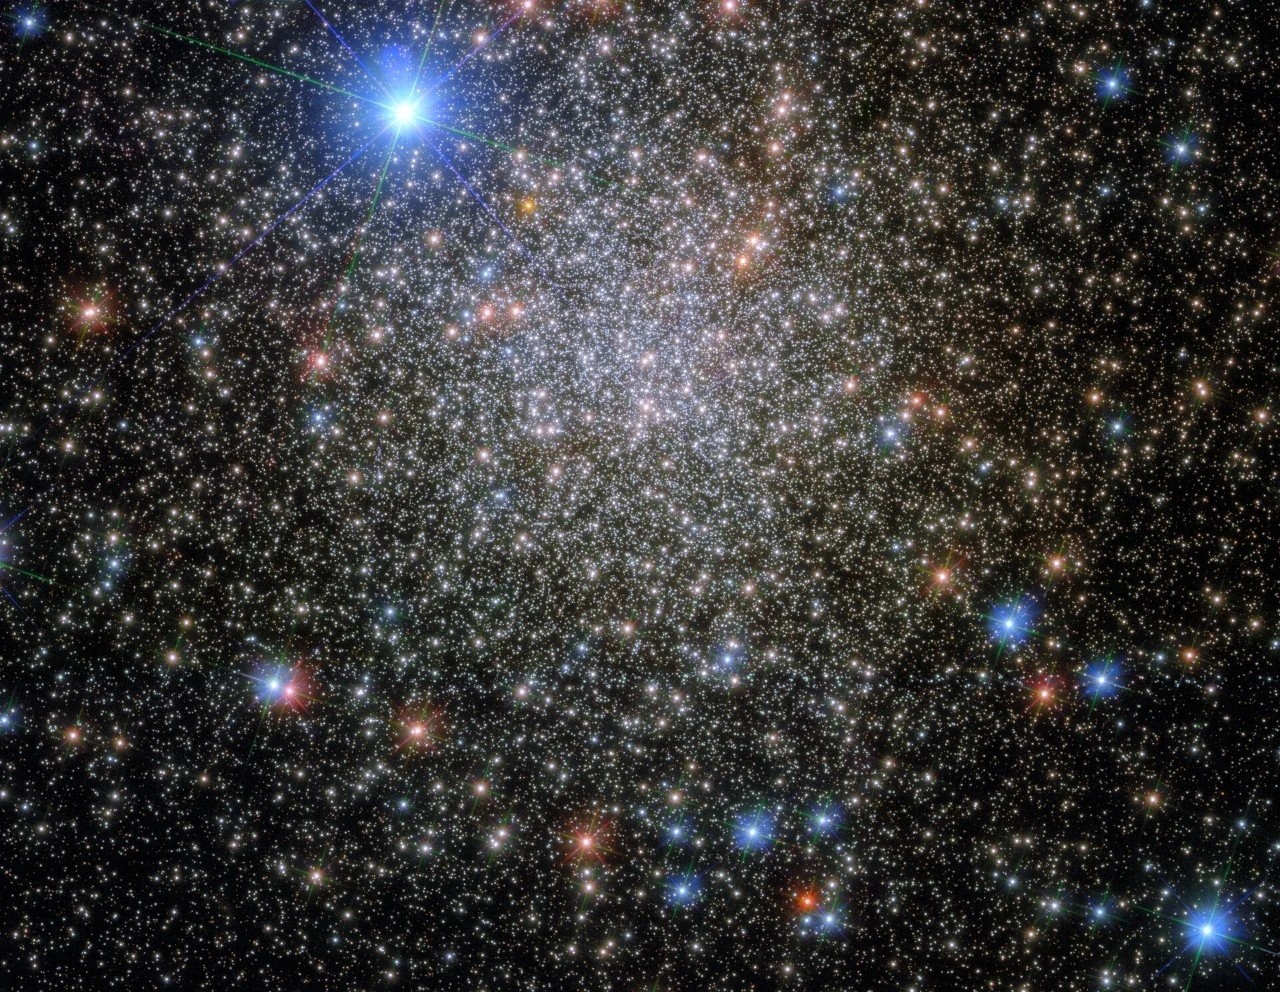 NGC 6380